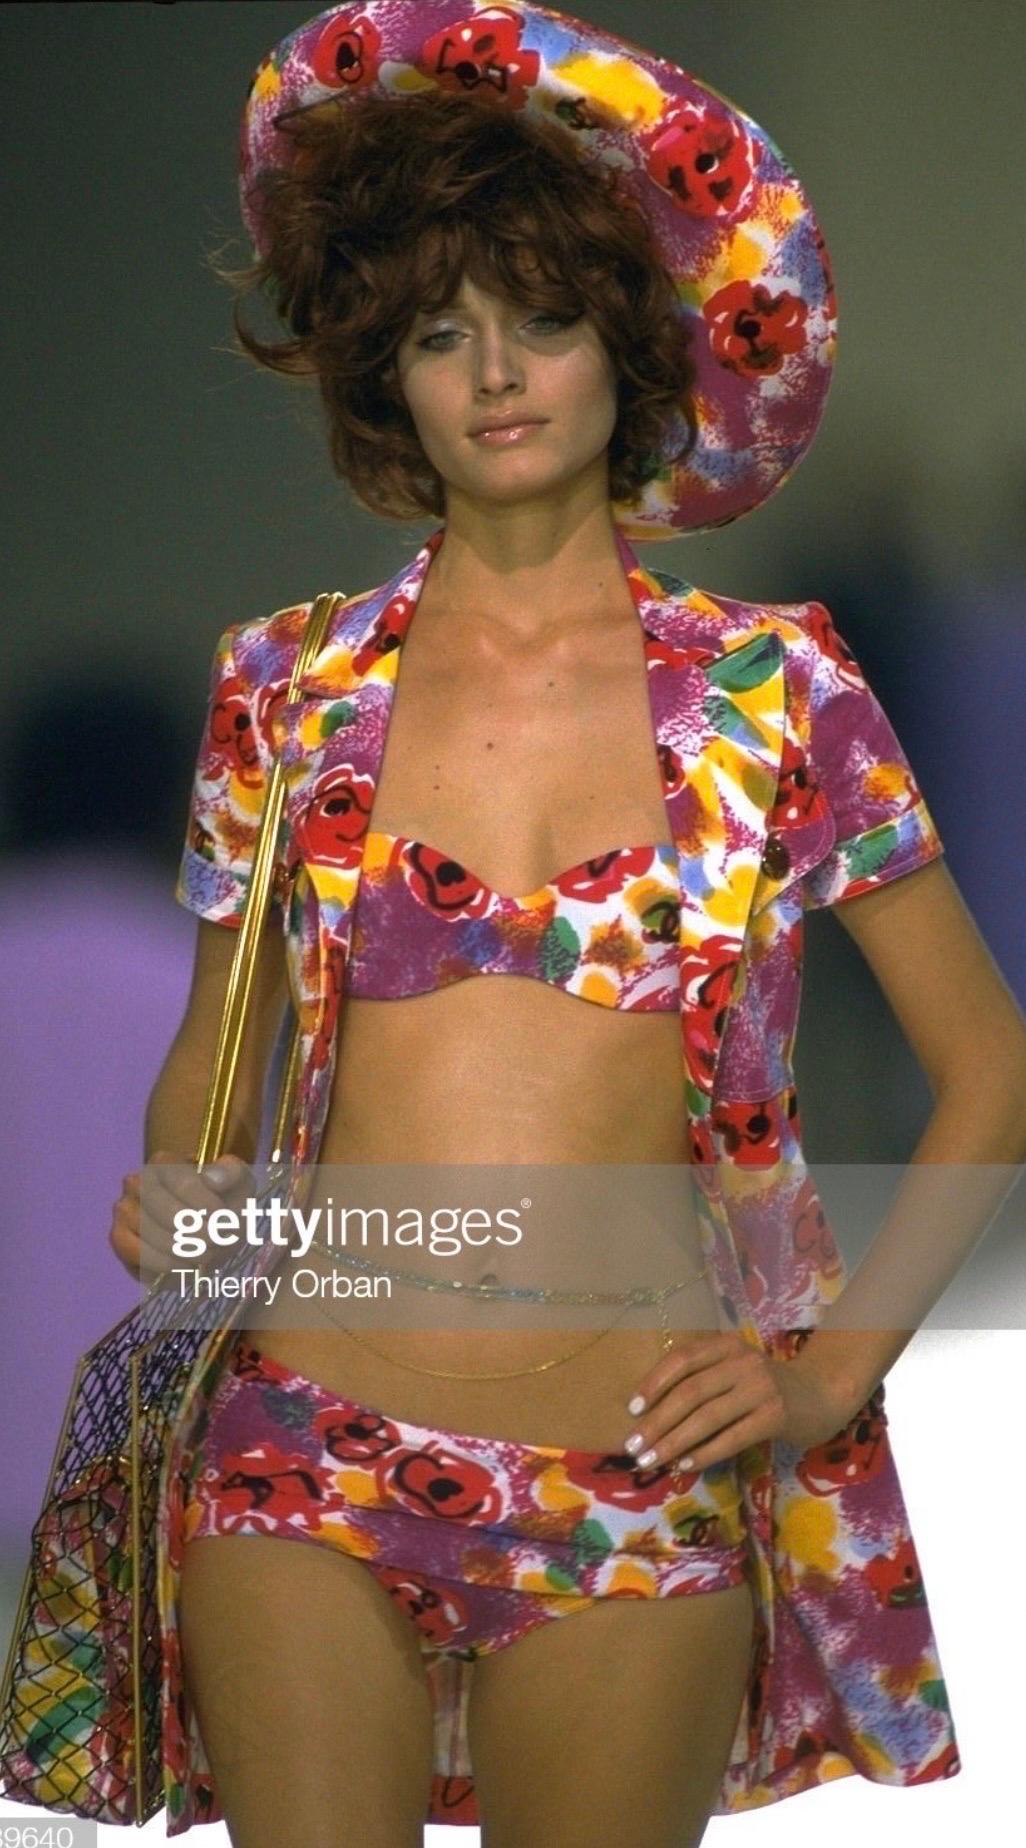  Un spectacle époustouflant  Robe en coton de Chanel telle qu'on l'a vue sur le podium de l'un des défilés RTW les plus emblématiques de Chanel dans les années 1990. 

Taille FR 38

Mesures (à plat sur un côté) :

D'une épaule à l'autre - 38 cm (15